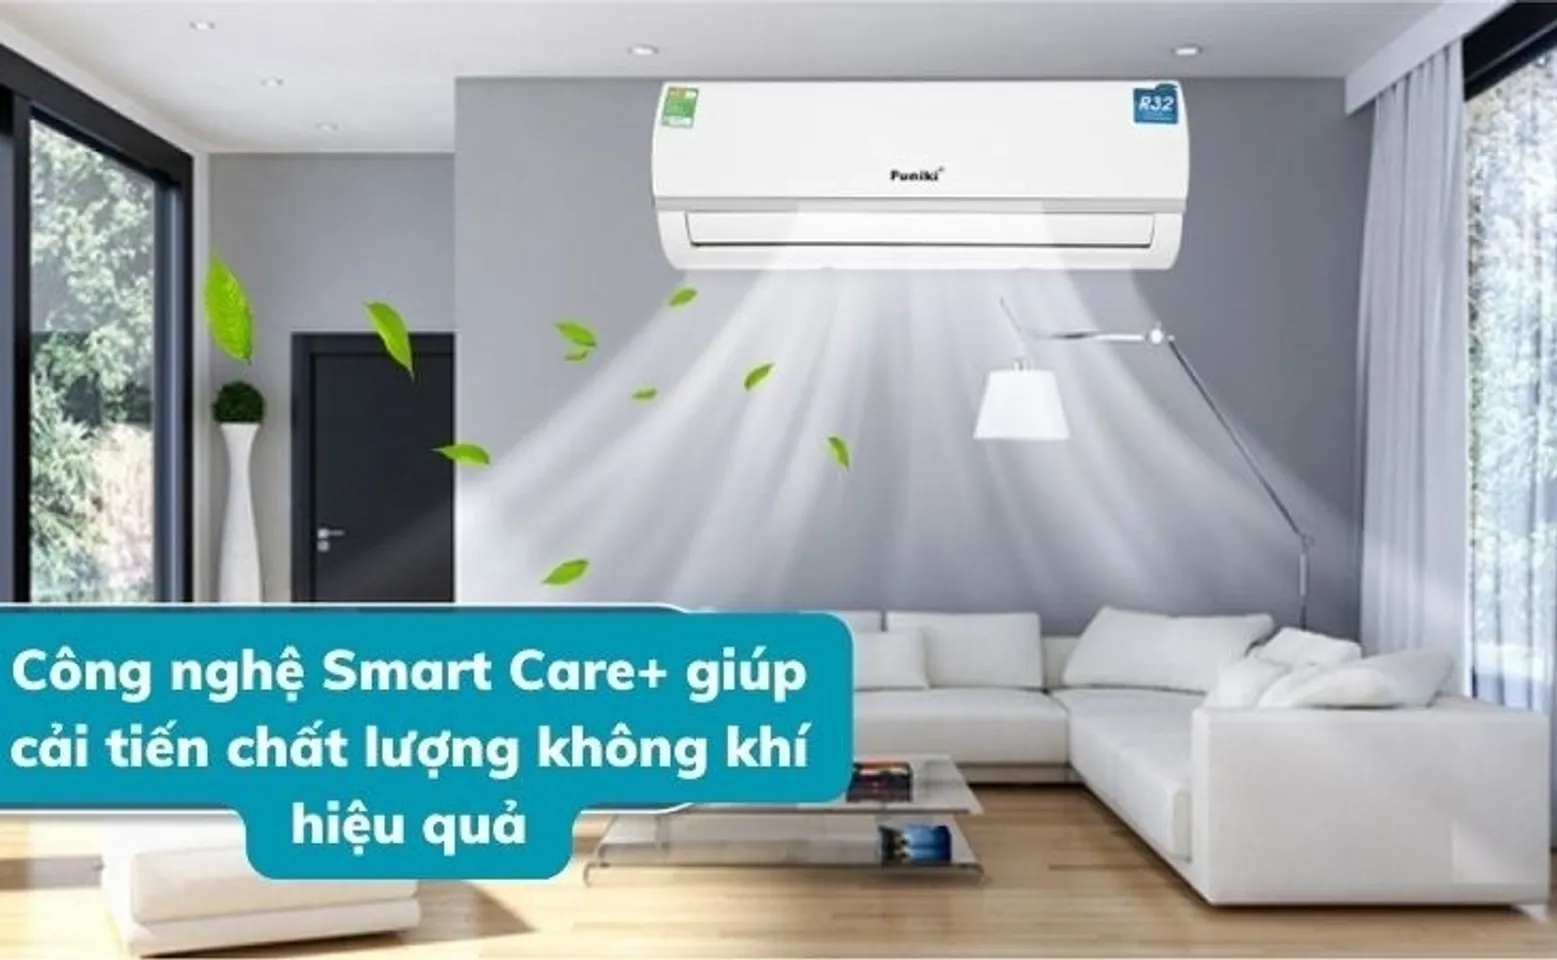 Công nghệ Smart Care+ được trang bị trên máy lạnh Funiki giúp cải tiến chất lượng không khí hiệu quả